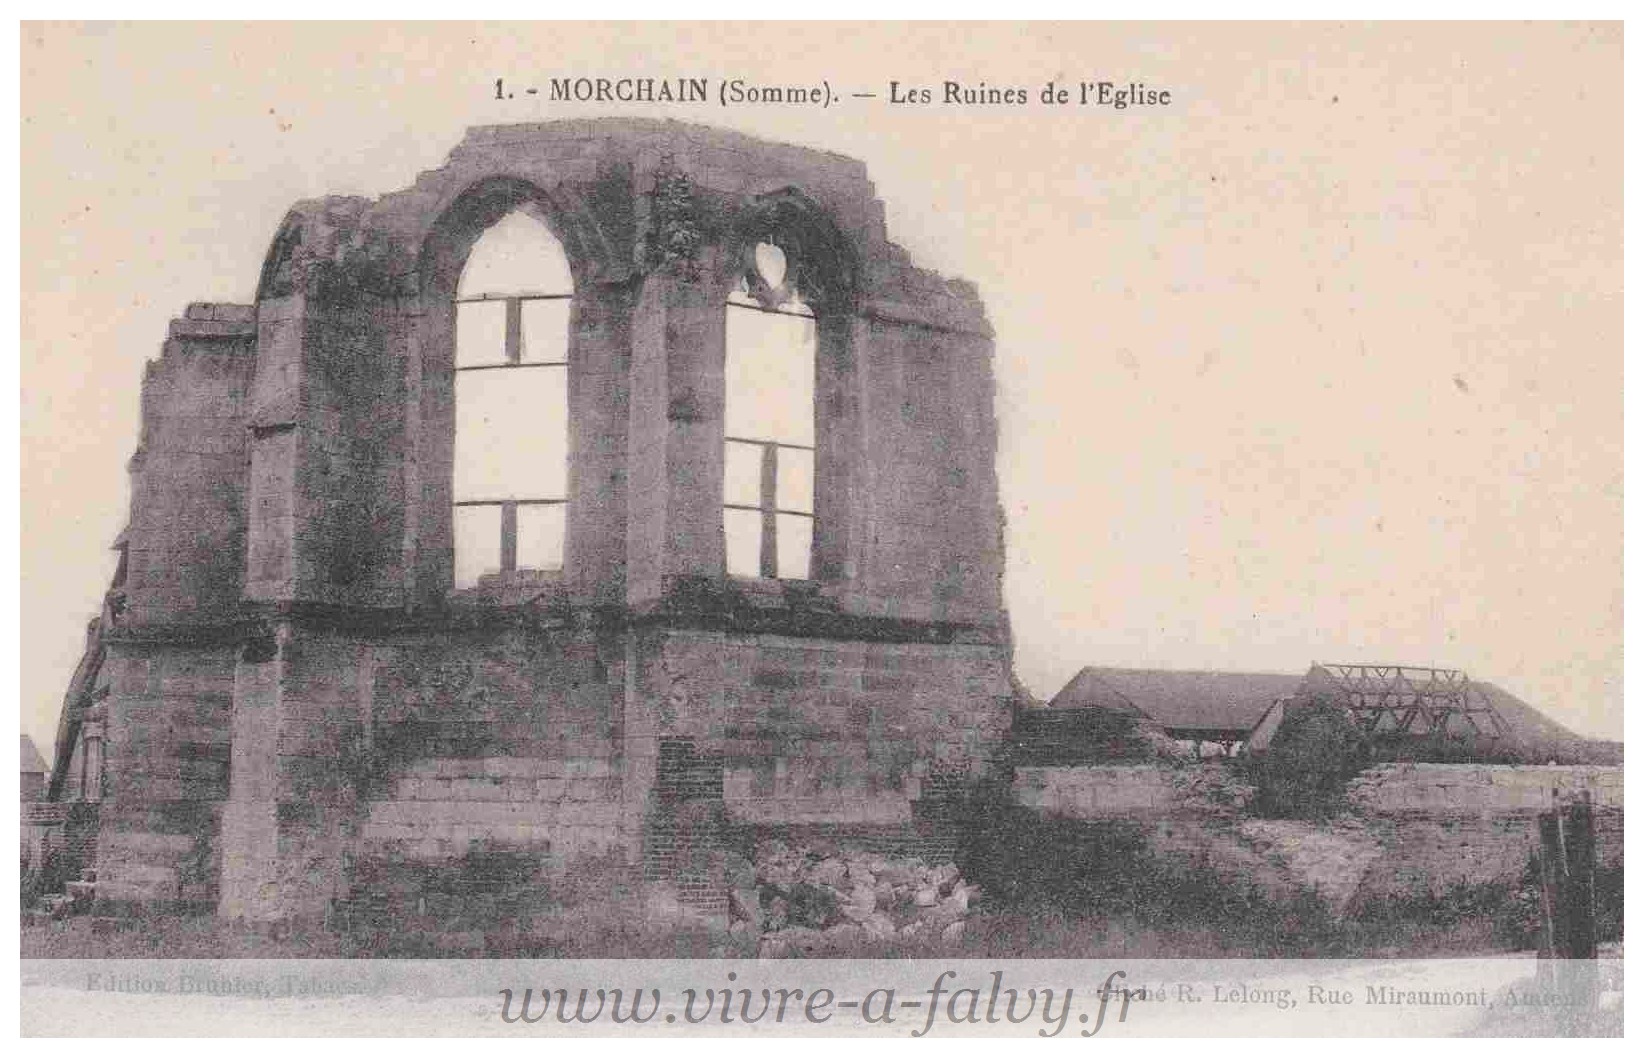 Morchain - Les Ruines de l'Eglise